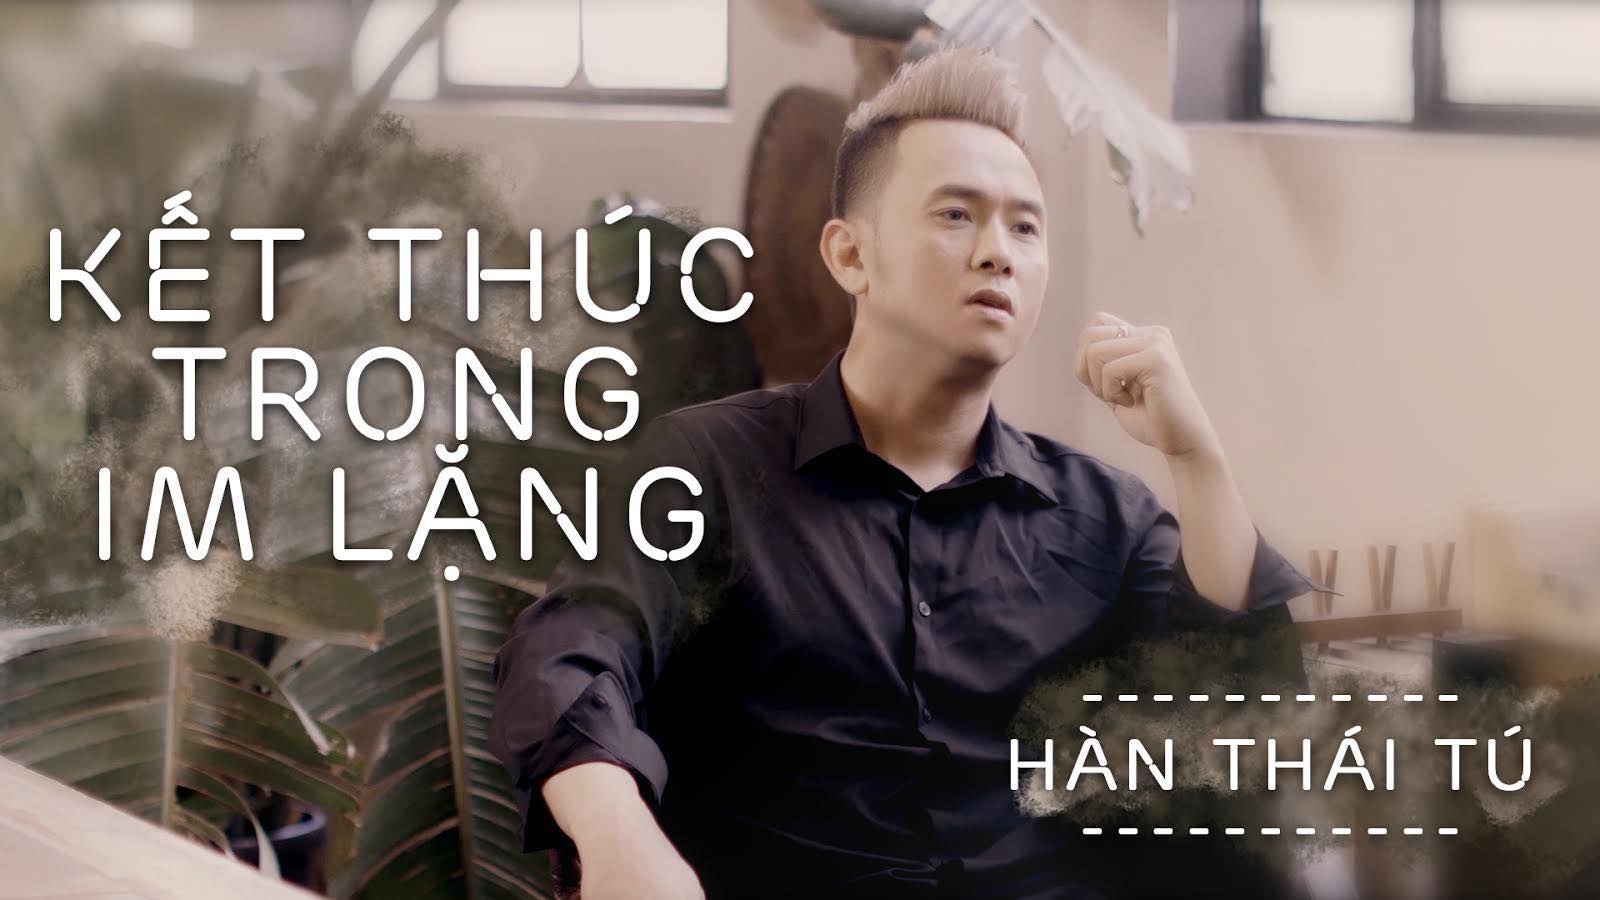 Hàn Thái Tú mang nặng tâm tư trong MV mới “Kết thúc trong im lặng”